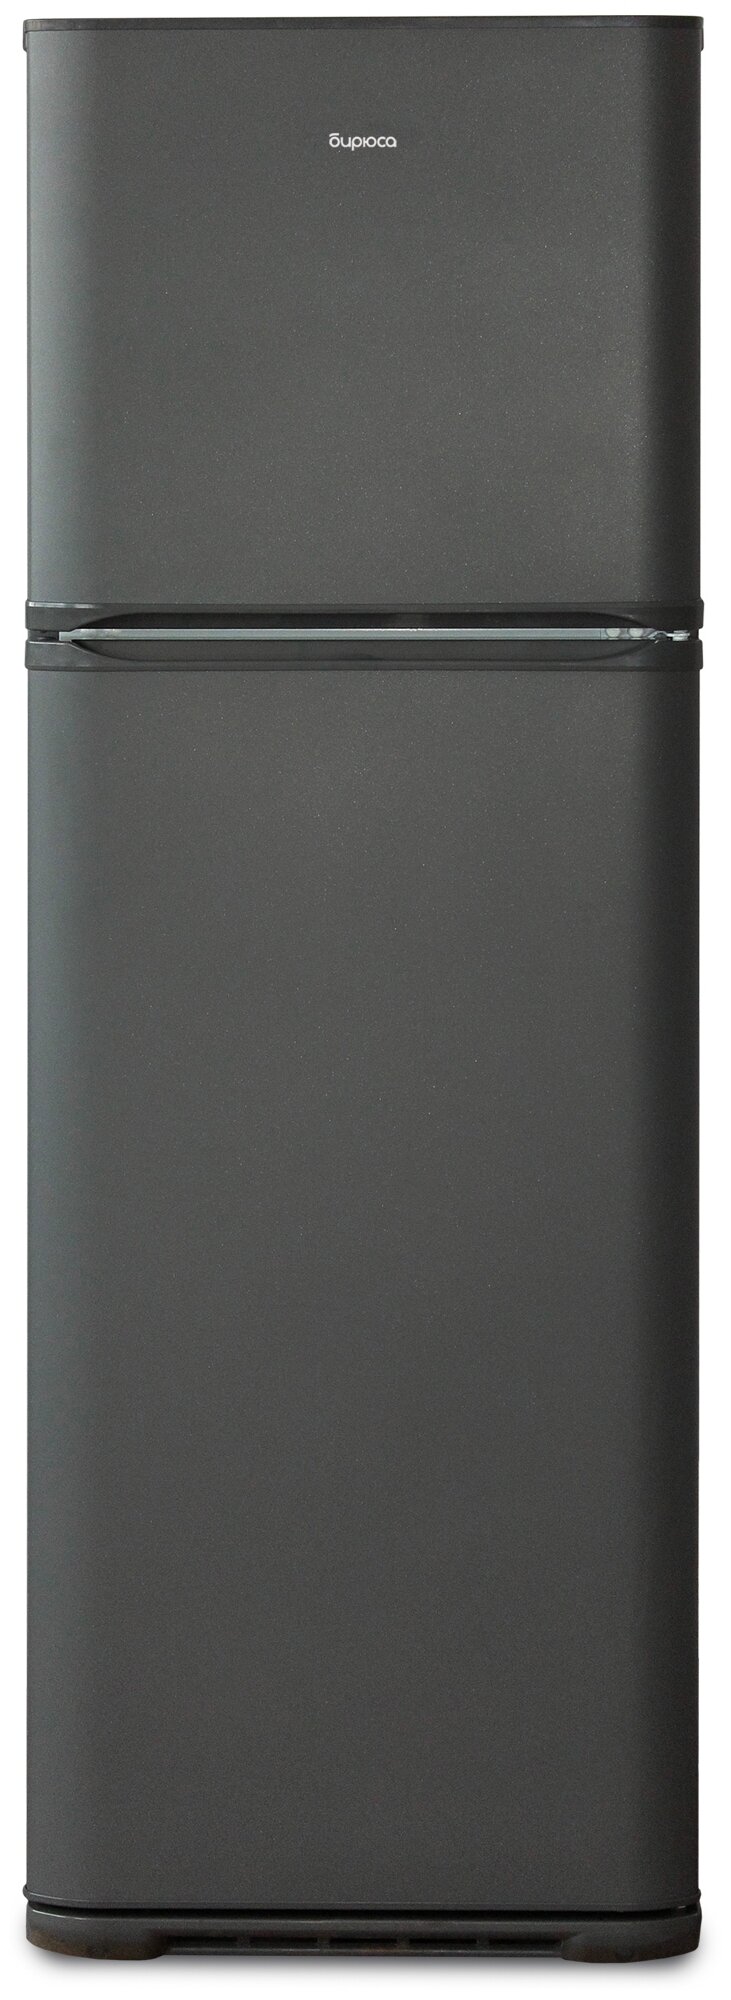 Холодильник Бирюса W139, графит